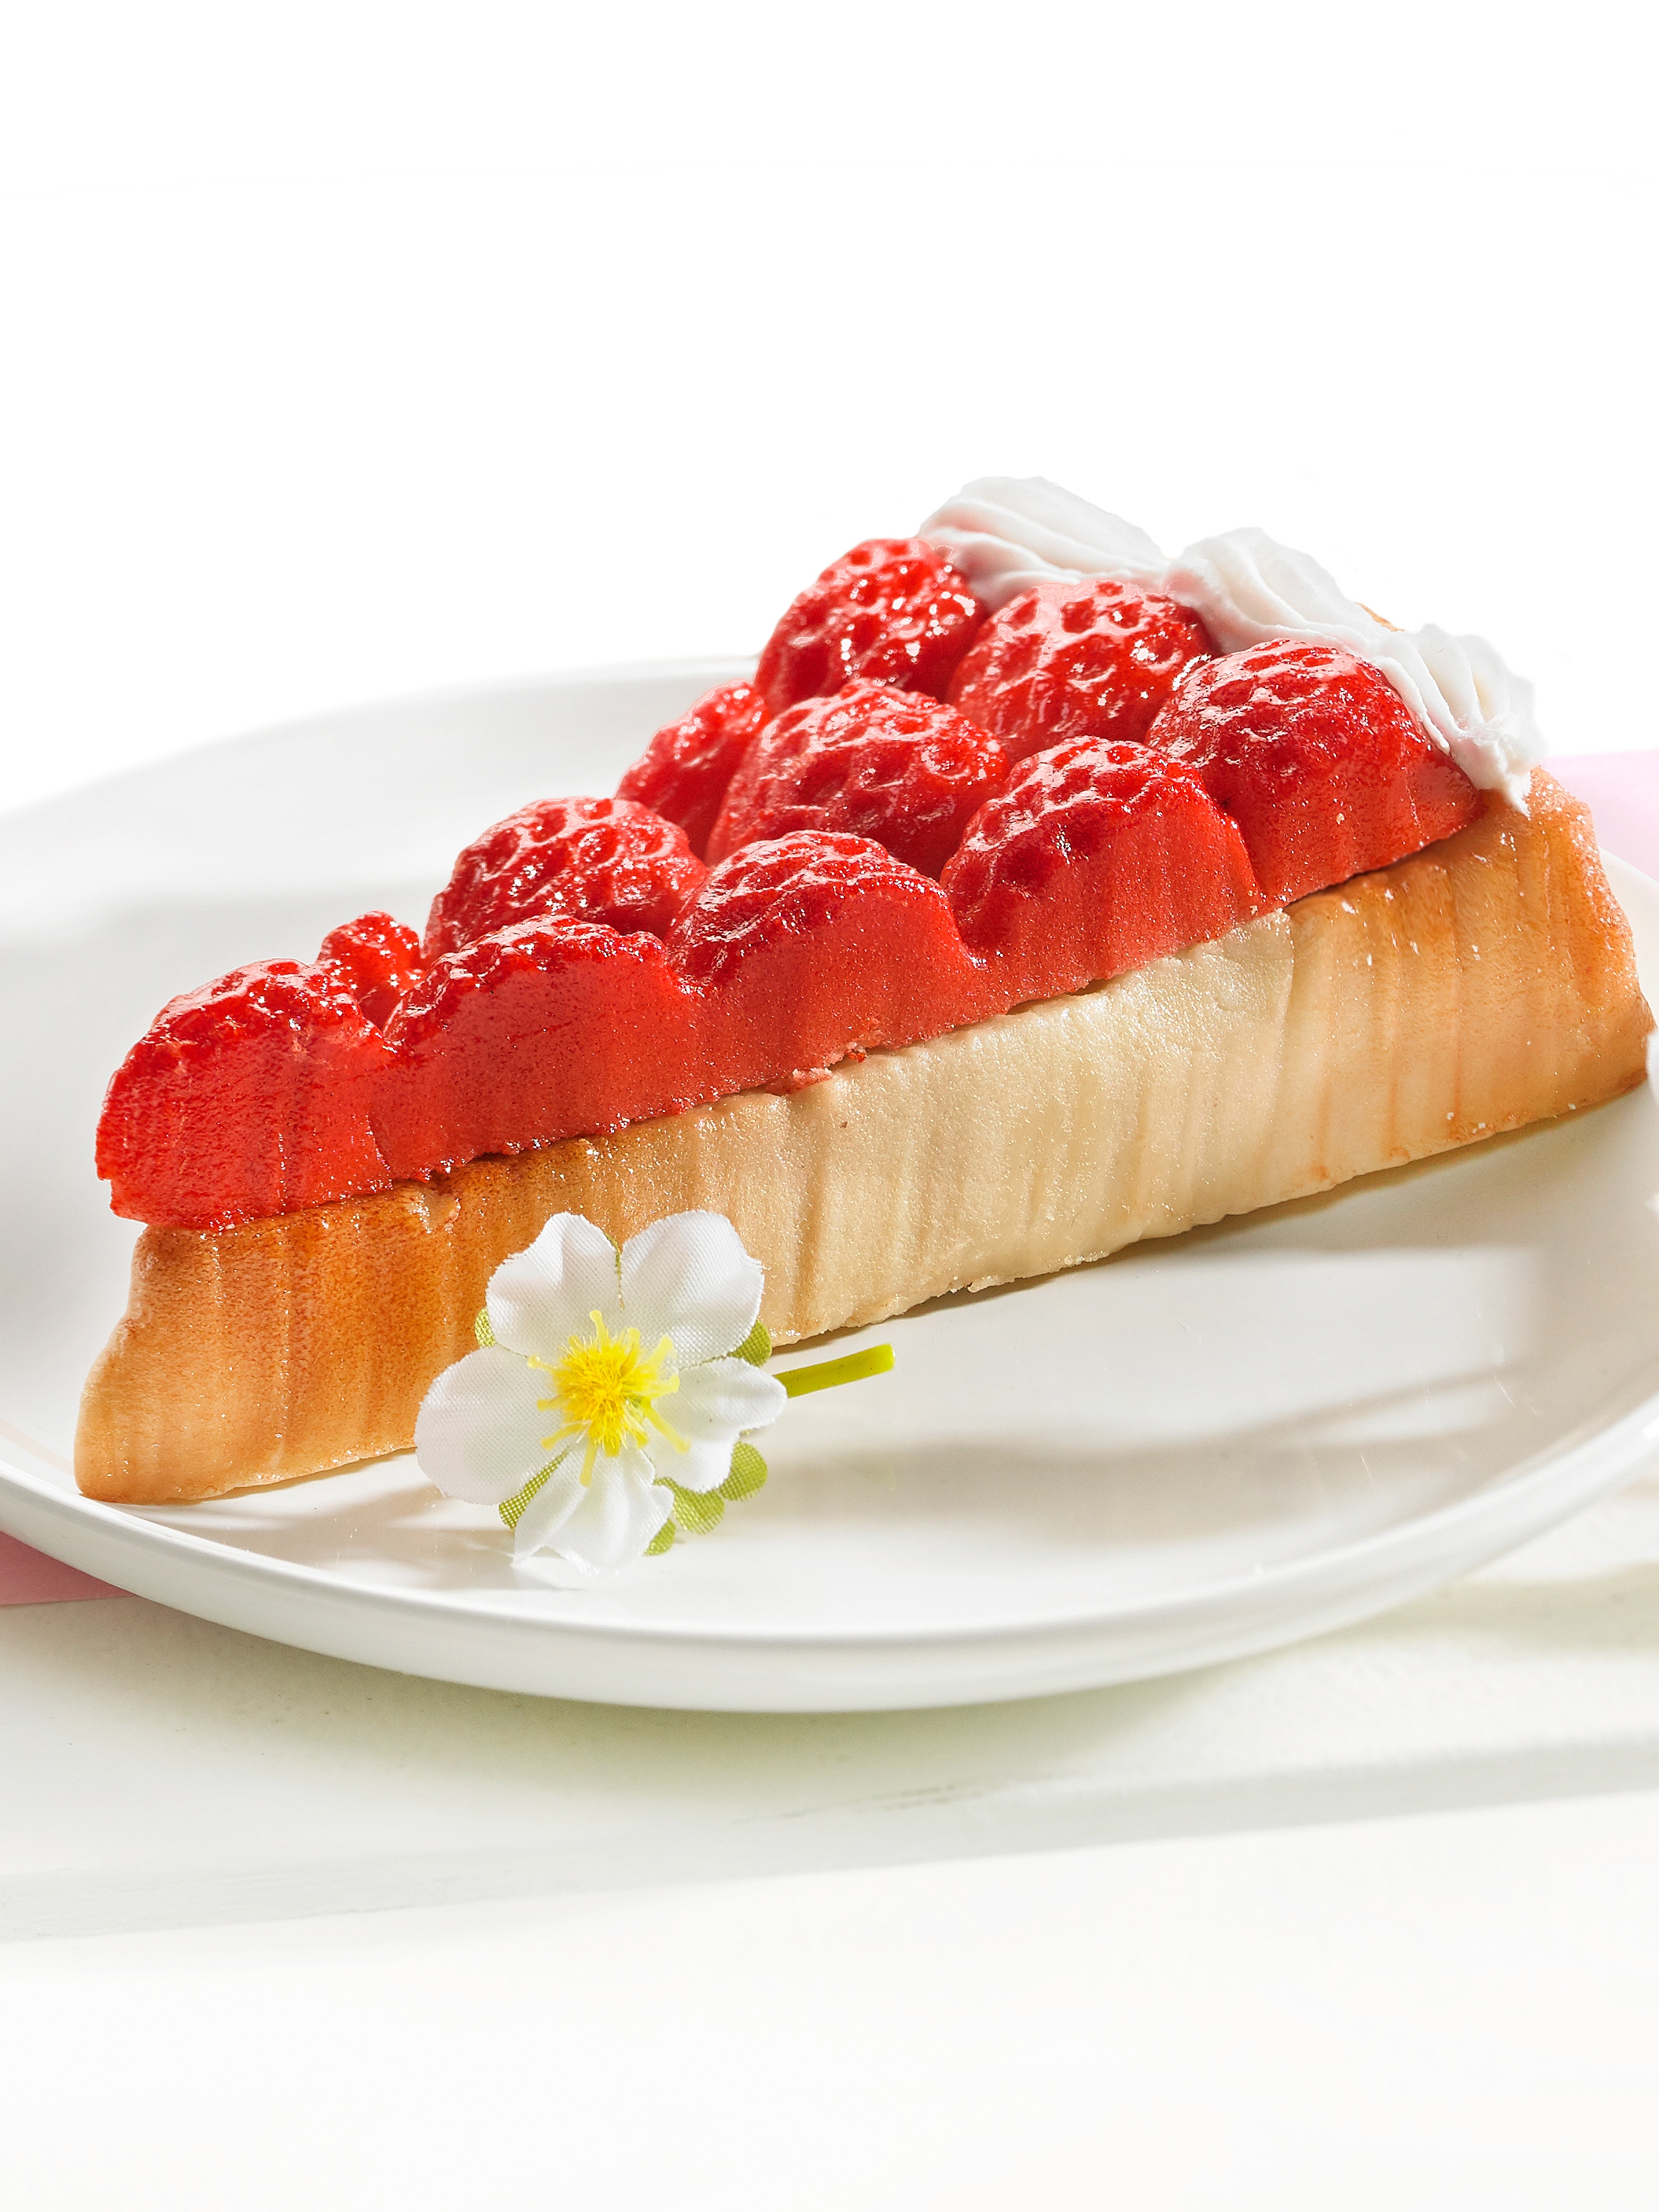 Marzipantorte „Erdbeere“